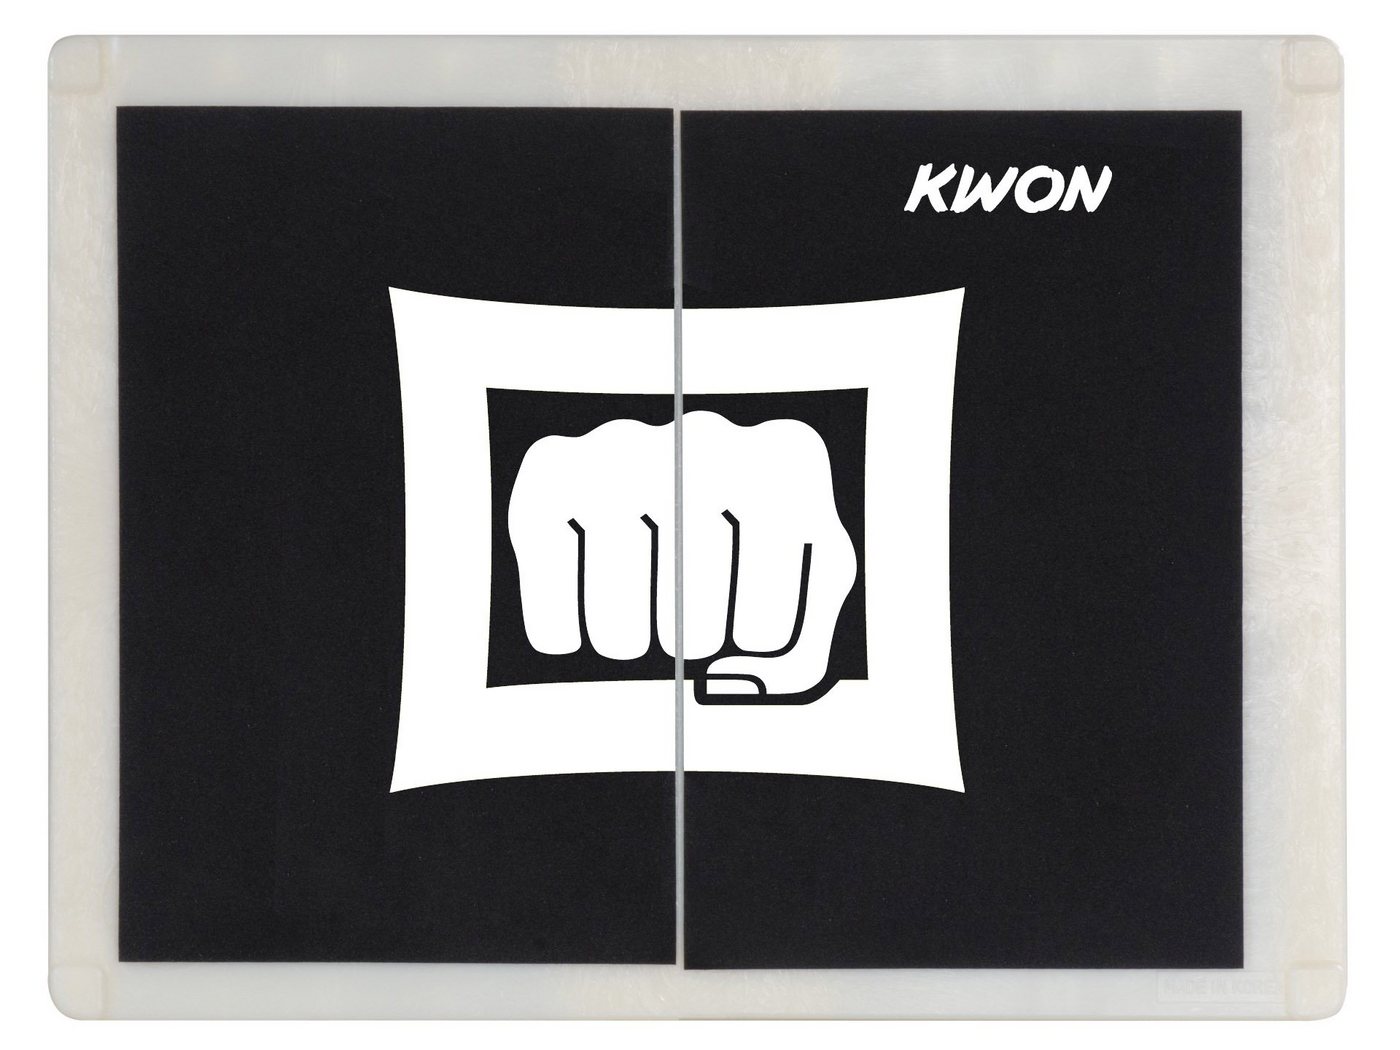 KWON Trainingshilfe Bruchtester Bruchtestbretter Karate Taekwondo mehrweg Schlagbretter, Mehrfach verwendbar, in drei Stärken, hartem Kunststoff von KWON